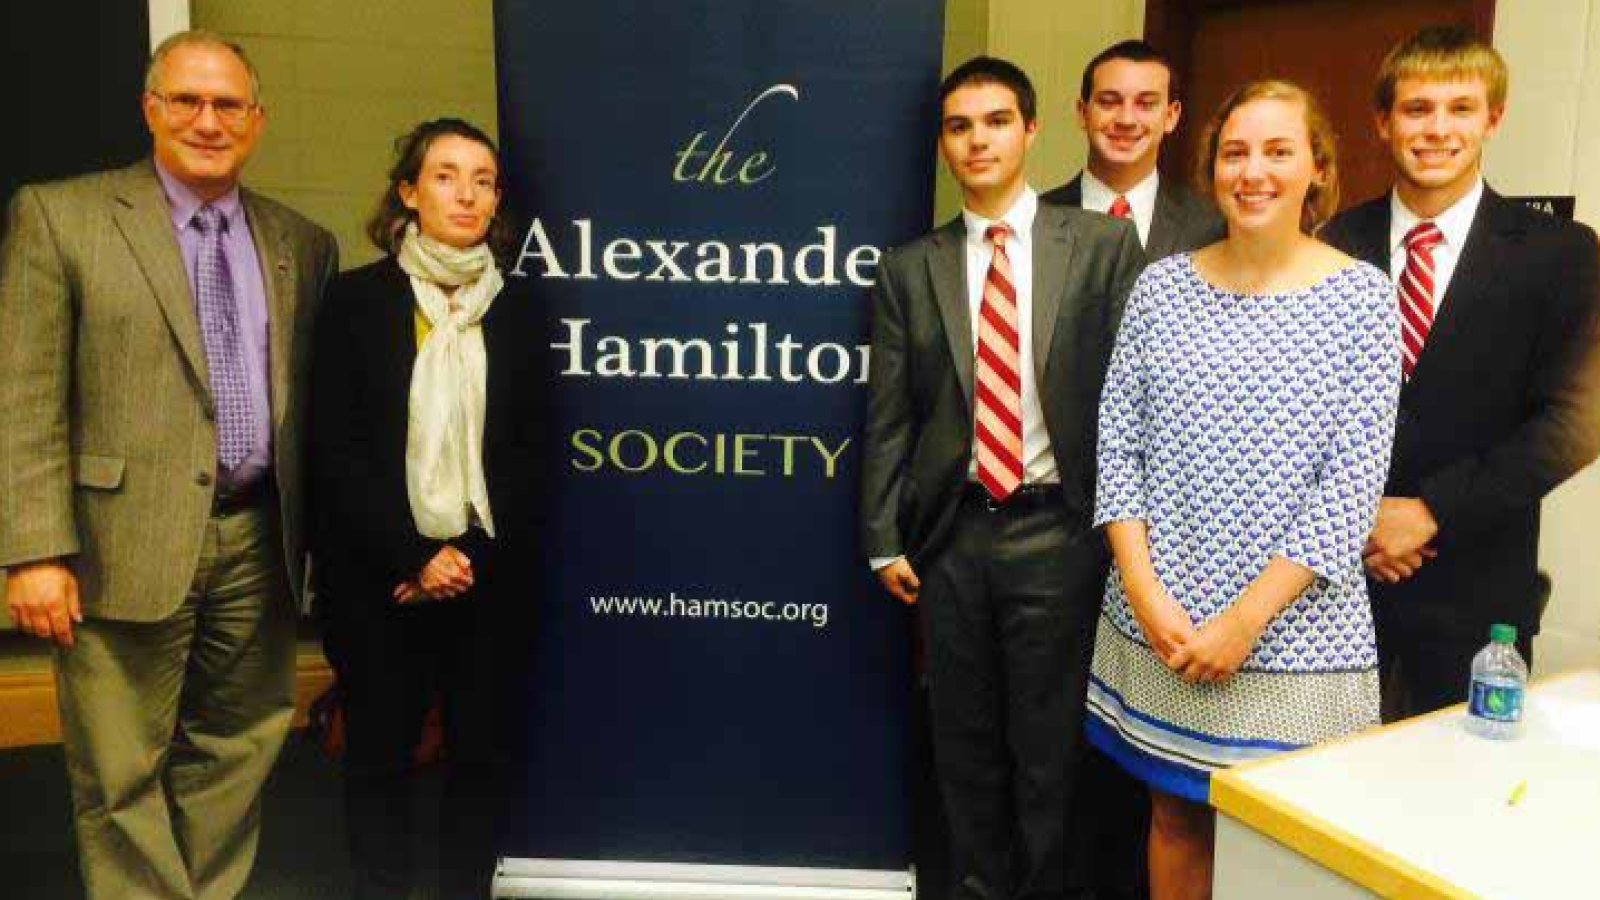 The members of the Alexander Hamilton Society.